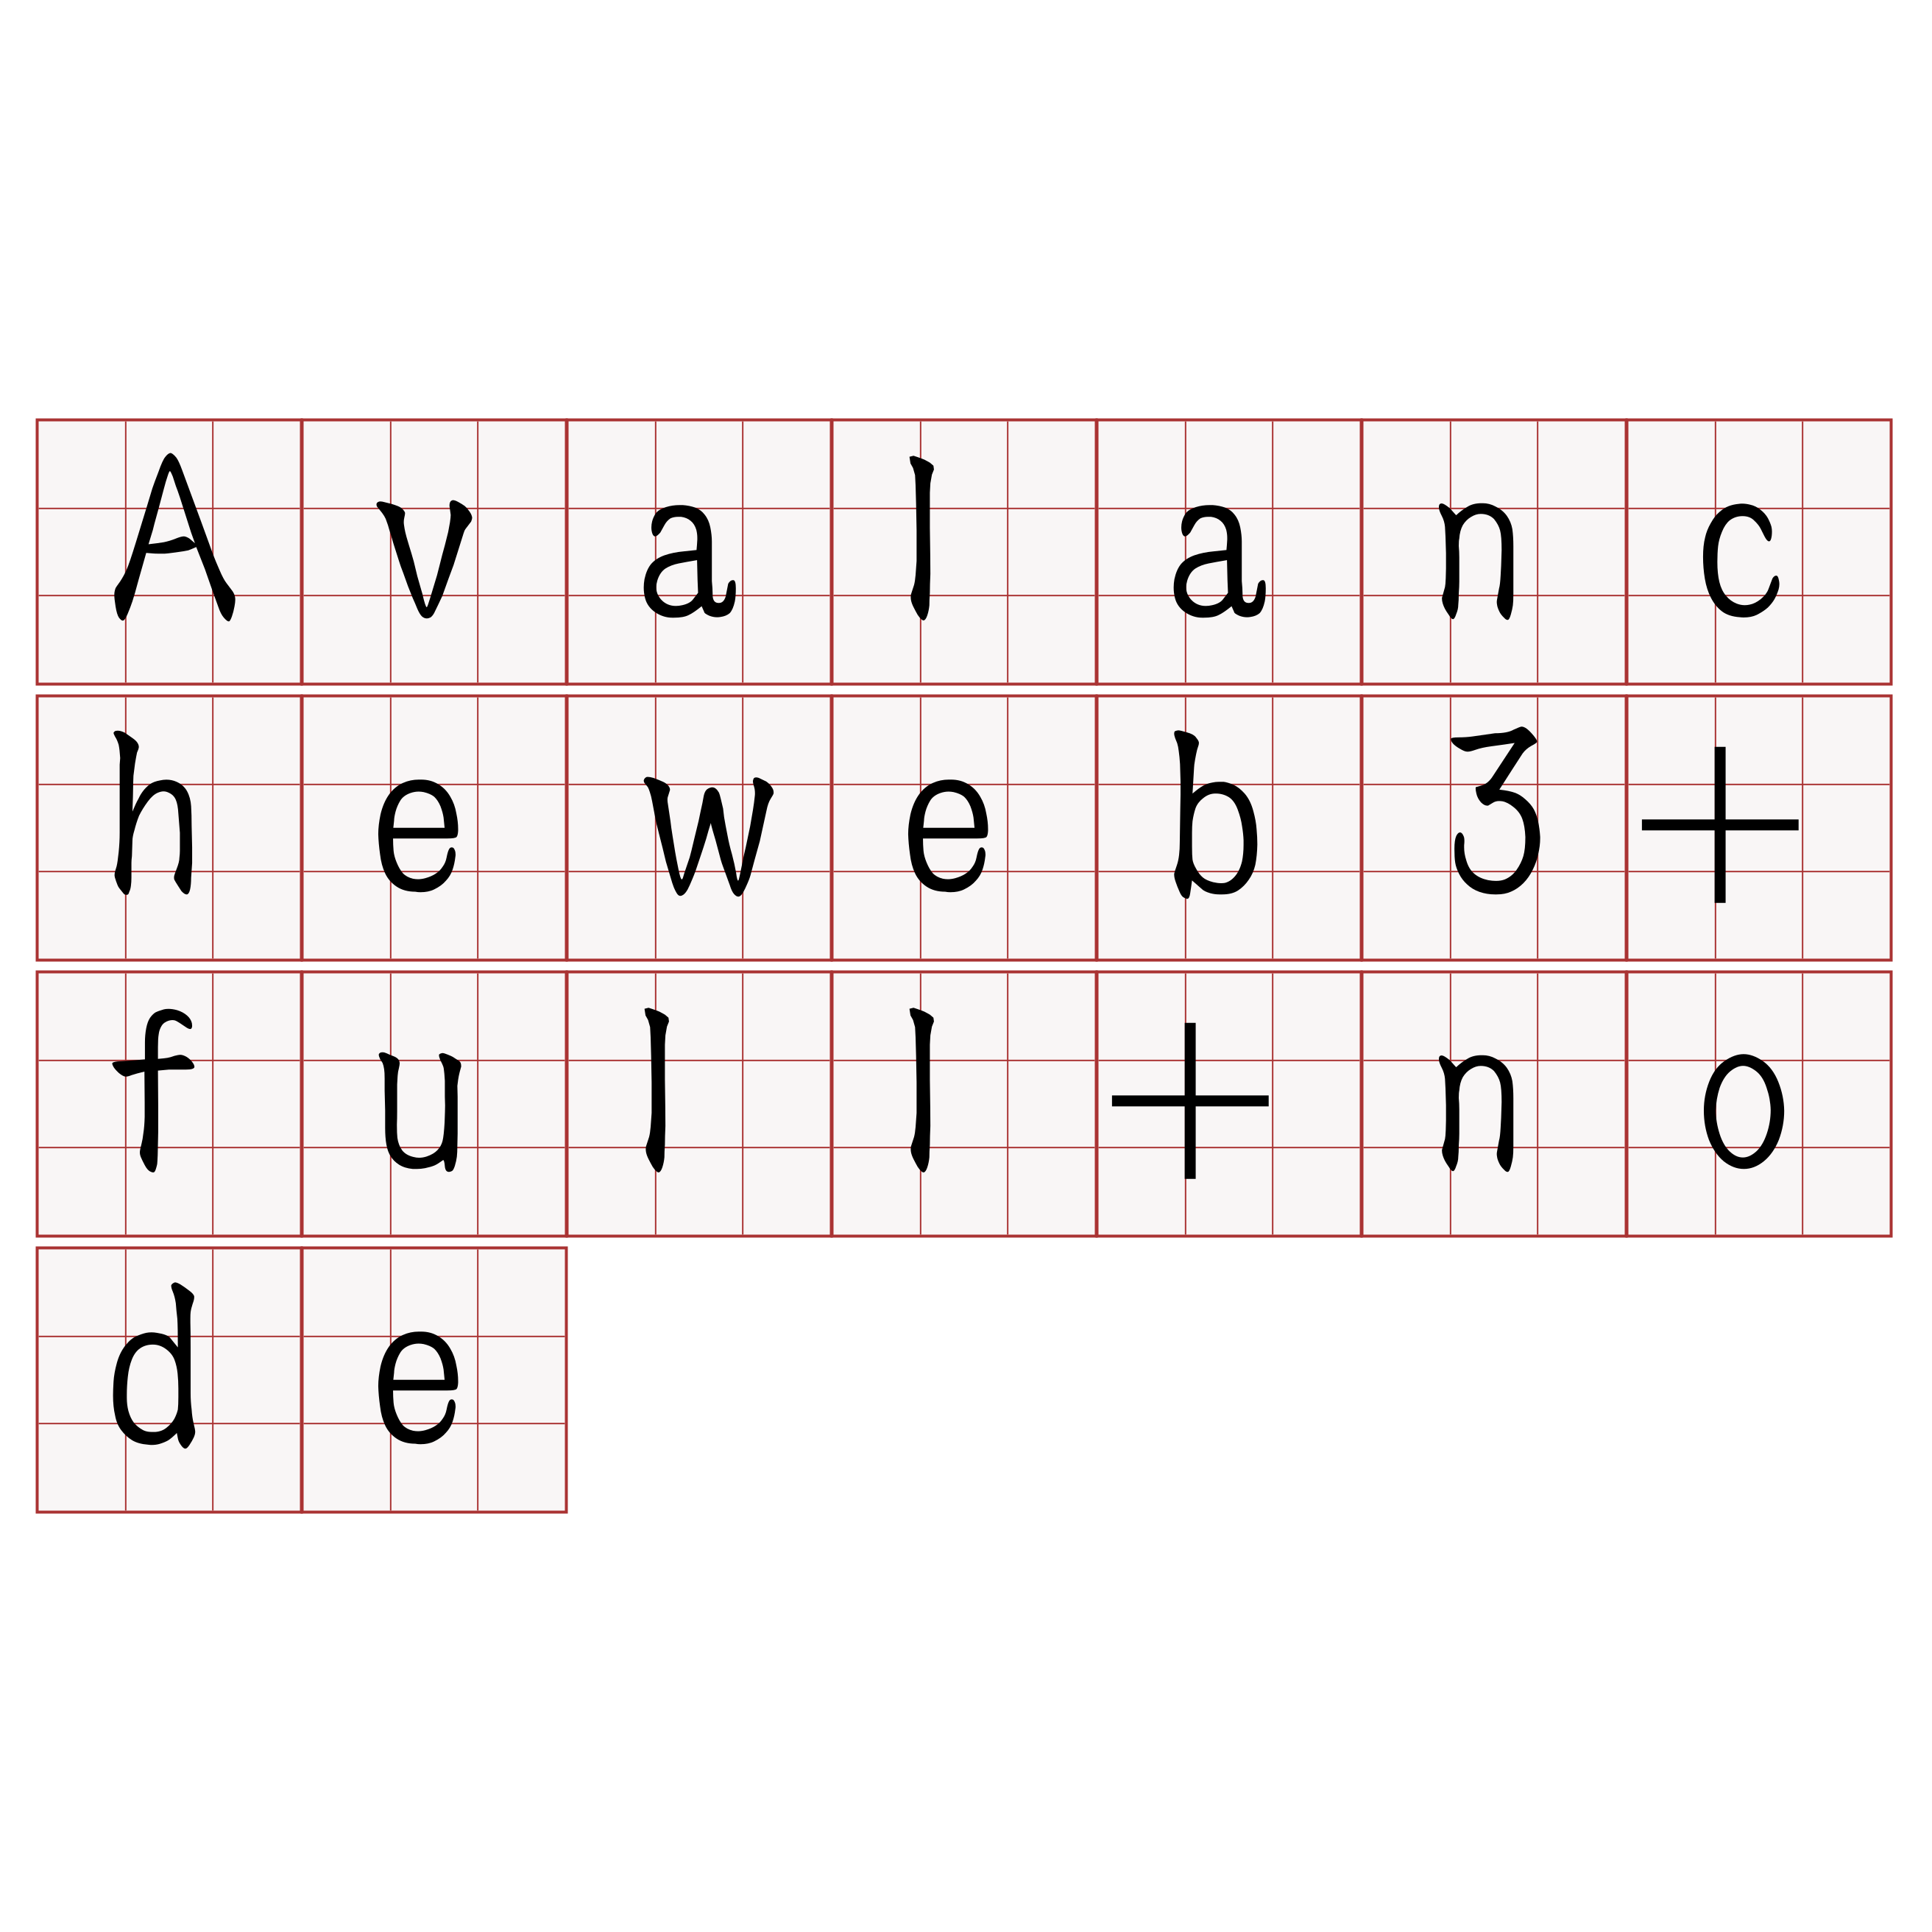 Avalancheweb3+full+node